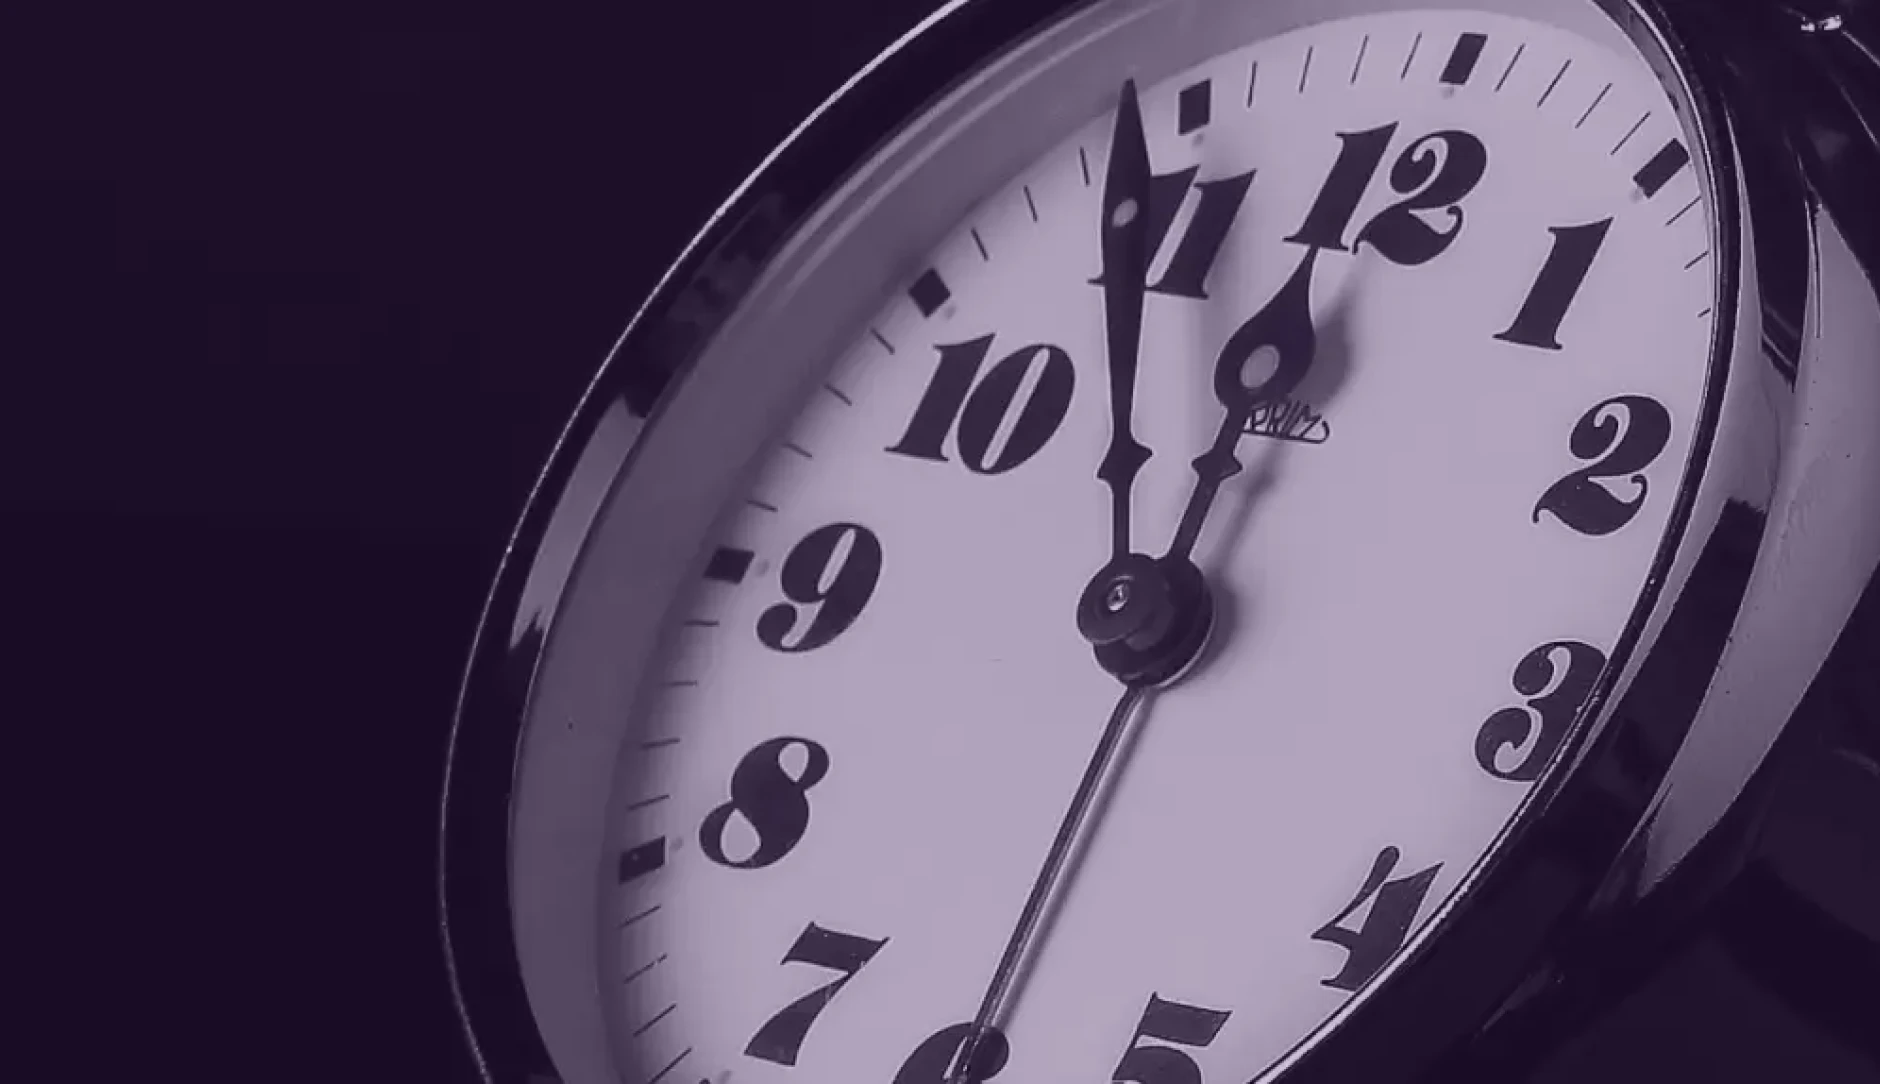 Clock in purple hue ticking Five before Twelve